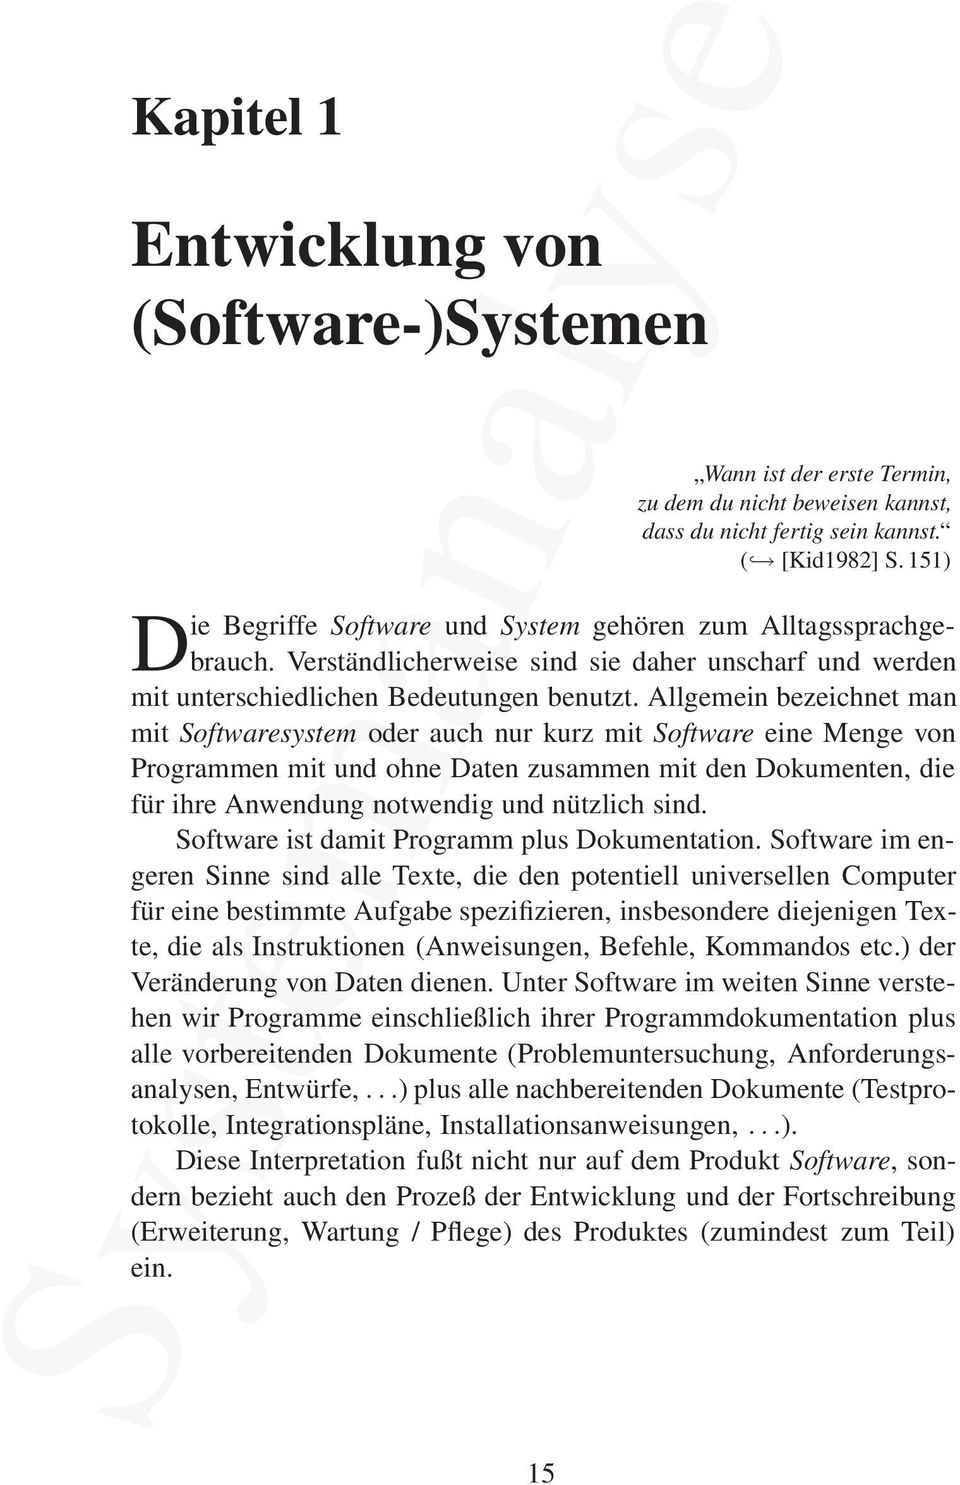 Allgemein bezeichnet man mit Softwaresystem oder auch nur kurz mit Software eine Menge von Programmen mit und ohne Daten zusammen mit den Dokumenten, die für ihre Anwendung notwendig und nützlich